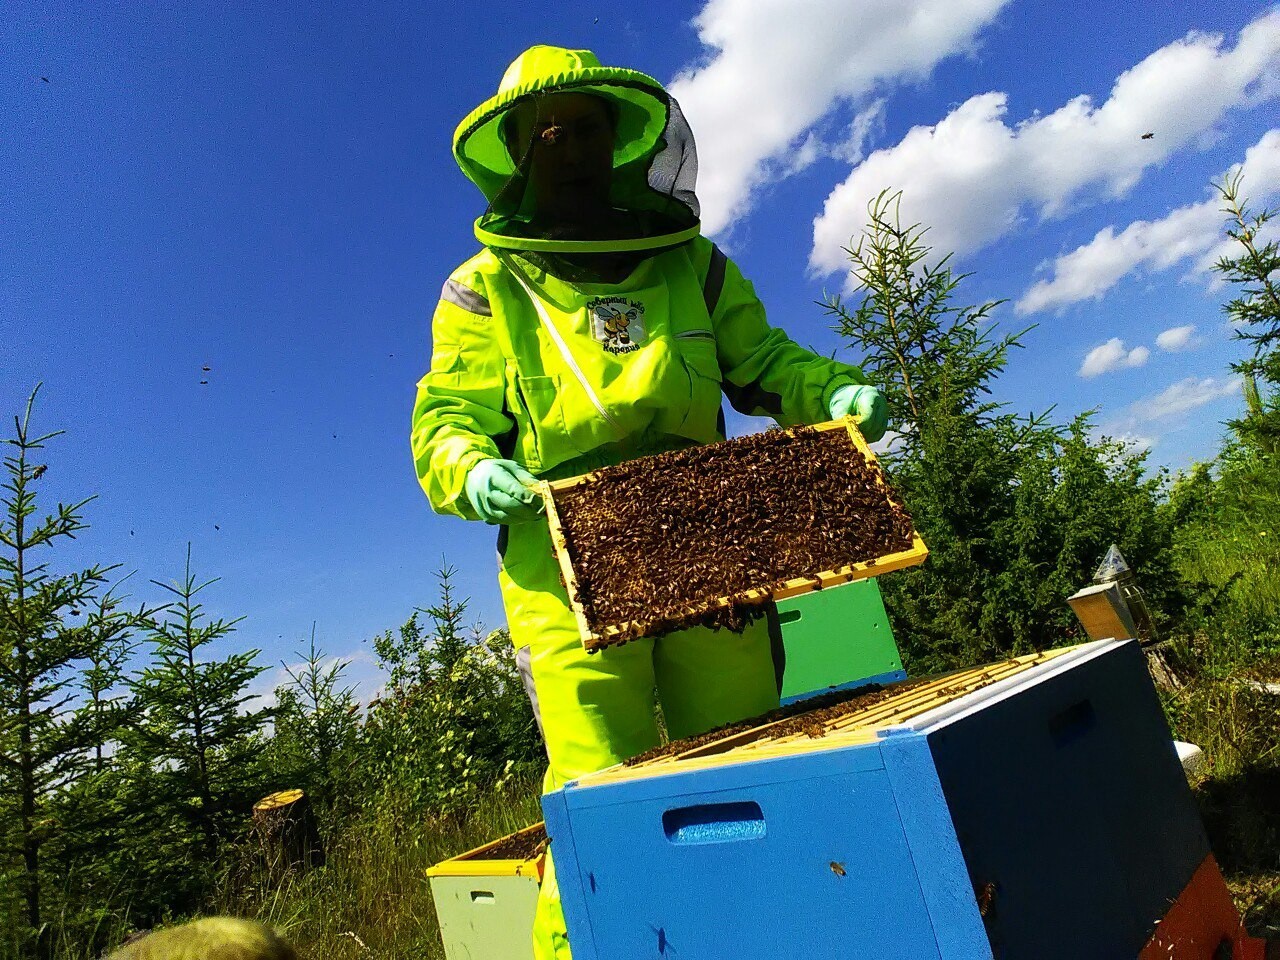 Kesän alussa Kintahankylässä aloittaa toimintansa mehiläistarha. Mehiläisiä ostetaan karjalaisilta mehiläishoitajilta. Kuva: Severnyi med -mehiläistarhan VKontakte-sivu